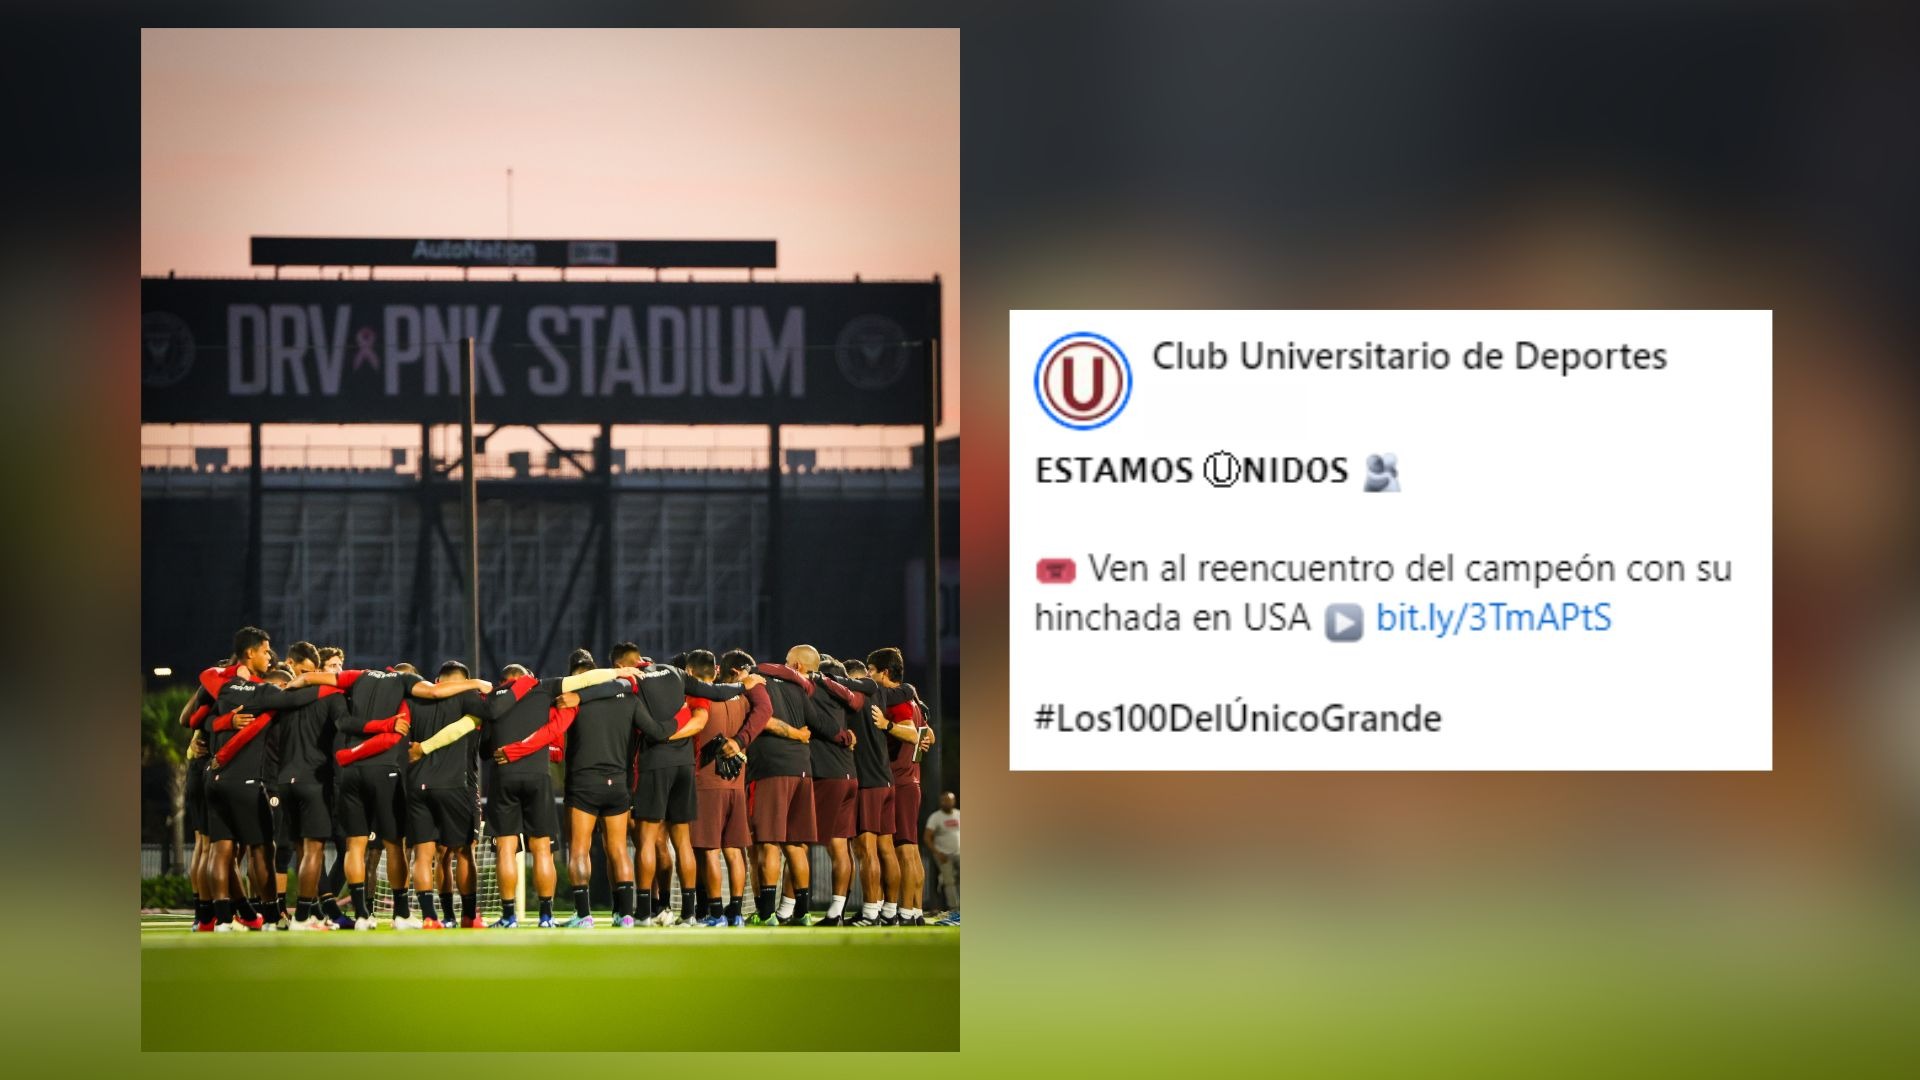 Universitario de Deportes realizó su entrenamiento en el Drive Pink Stadium de Miami / Facebook: Universitario de Deportes